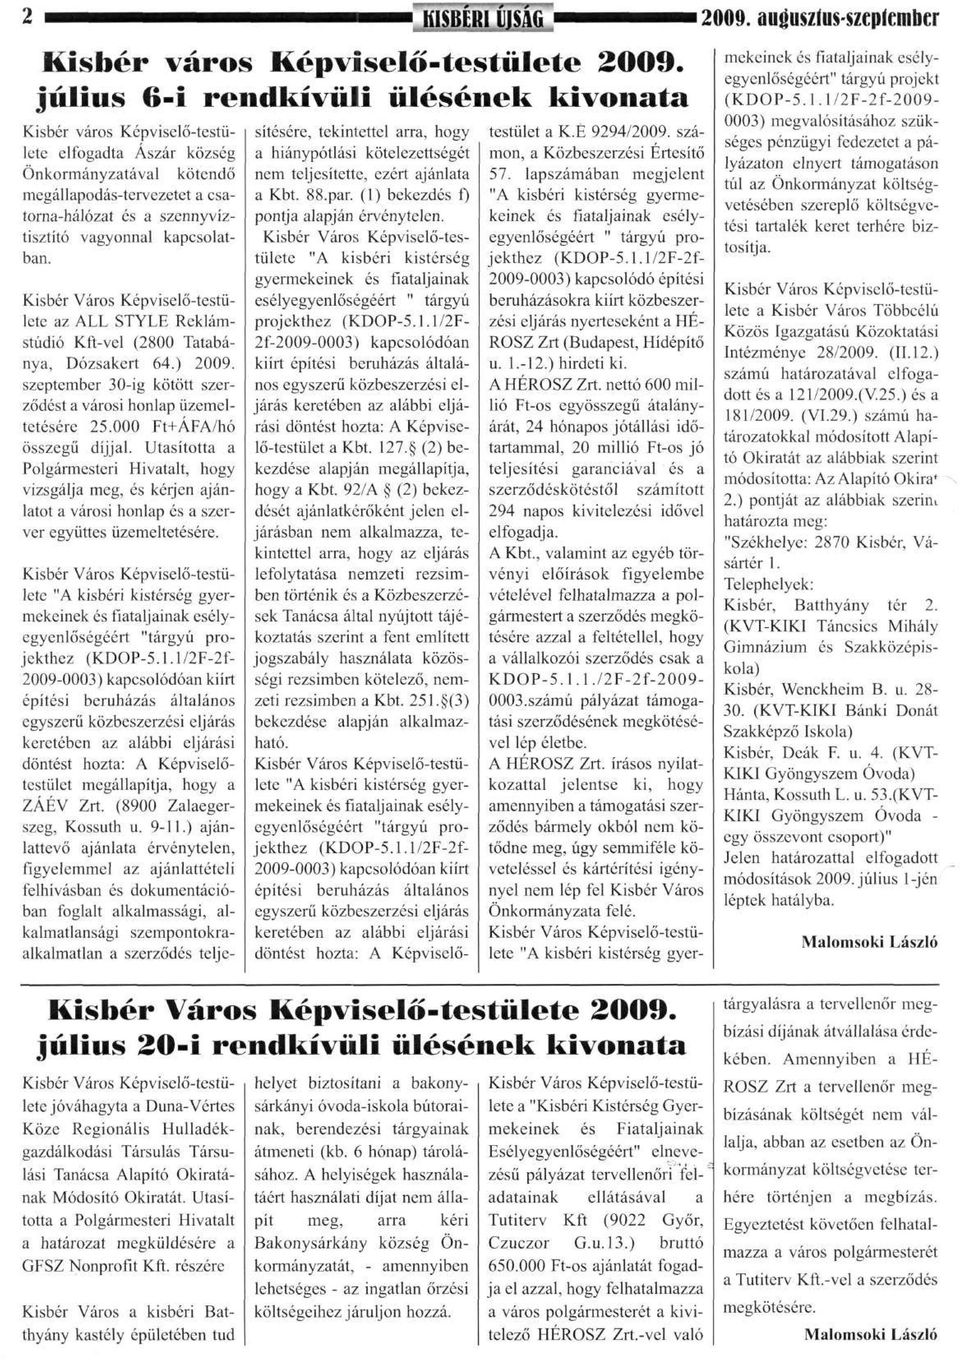 kapcsolatban. Kisbér Város Képviselő-testülete az ALL STYLE Reklámstúdió Kft-vel (2800 Tatabánya, Dózsakert 64.) 2009. szeptember 30-ig kötött szerződést a városi honlap üzemeltetésére 25.